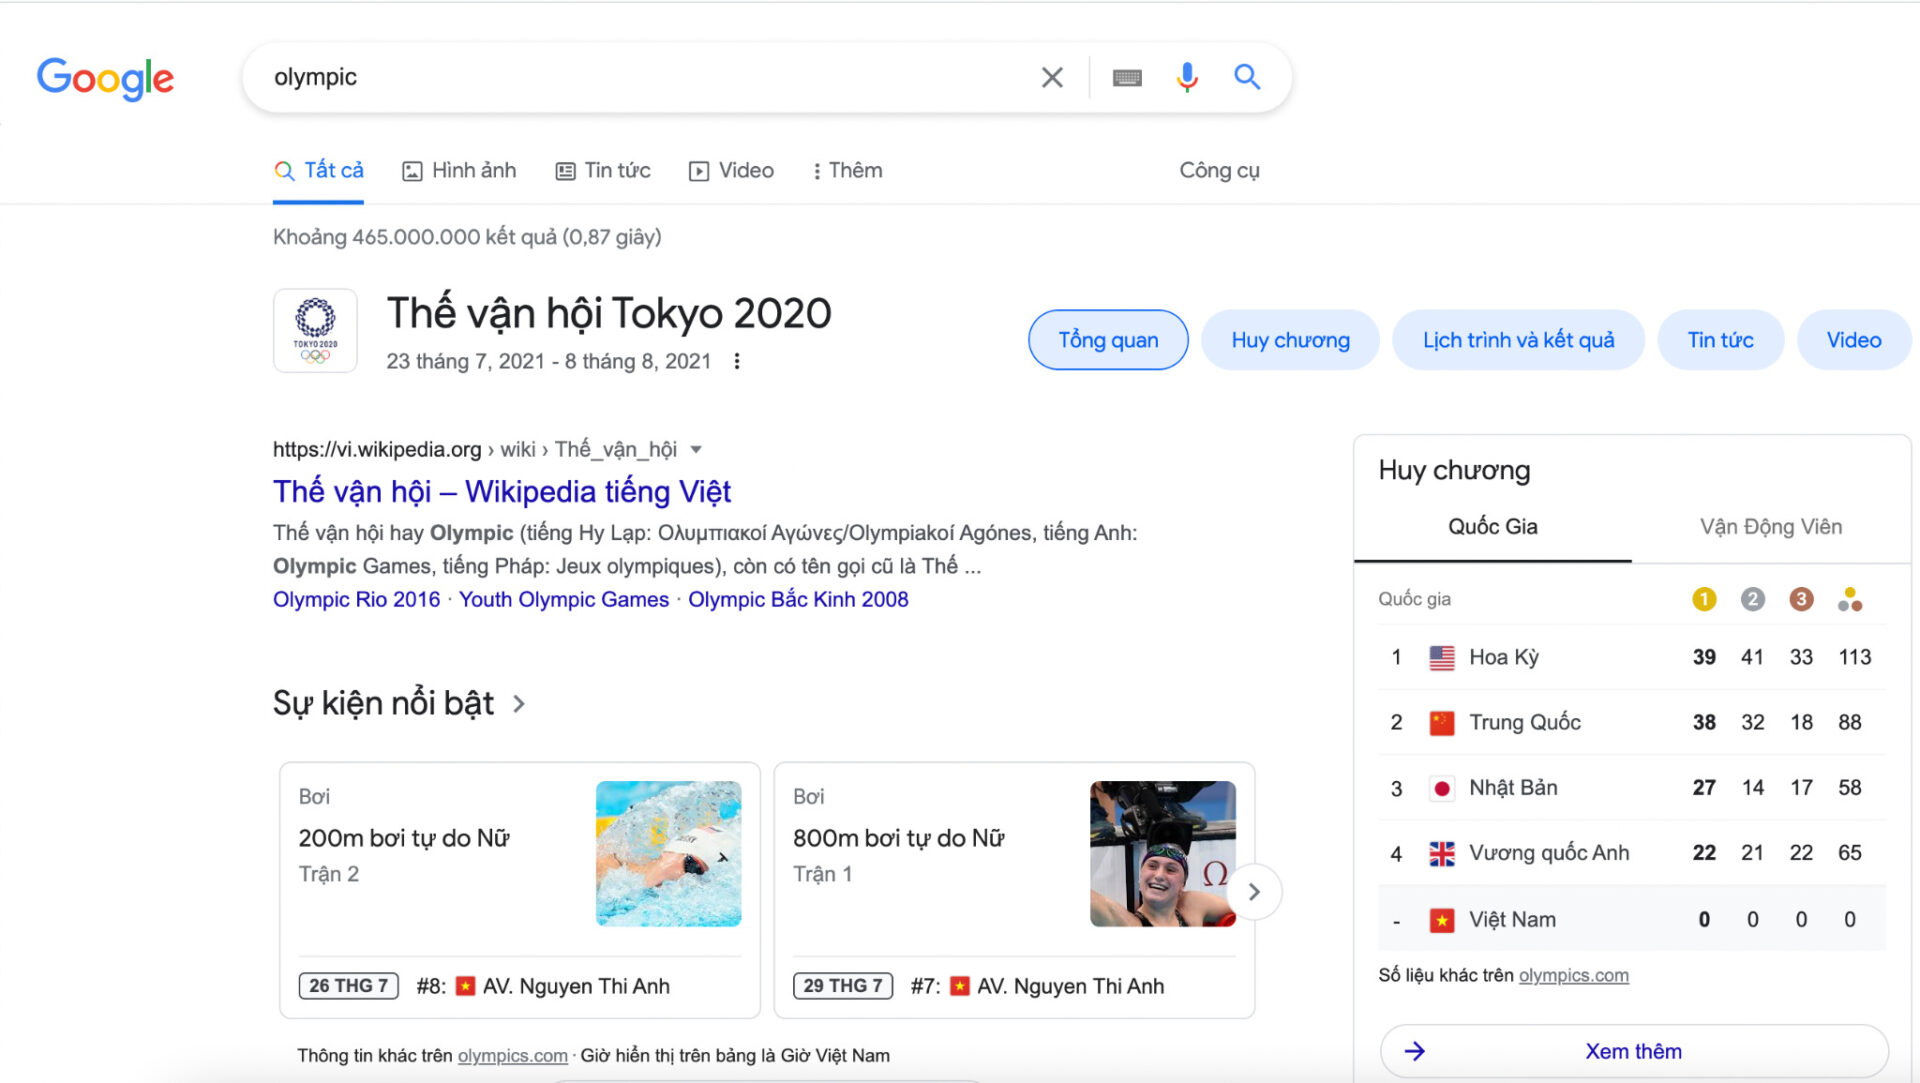 Jack & Thiên An đứng đầu top 10 chủ đề được tìm kiếm nhiều nhất trên Google tại Việt Nam